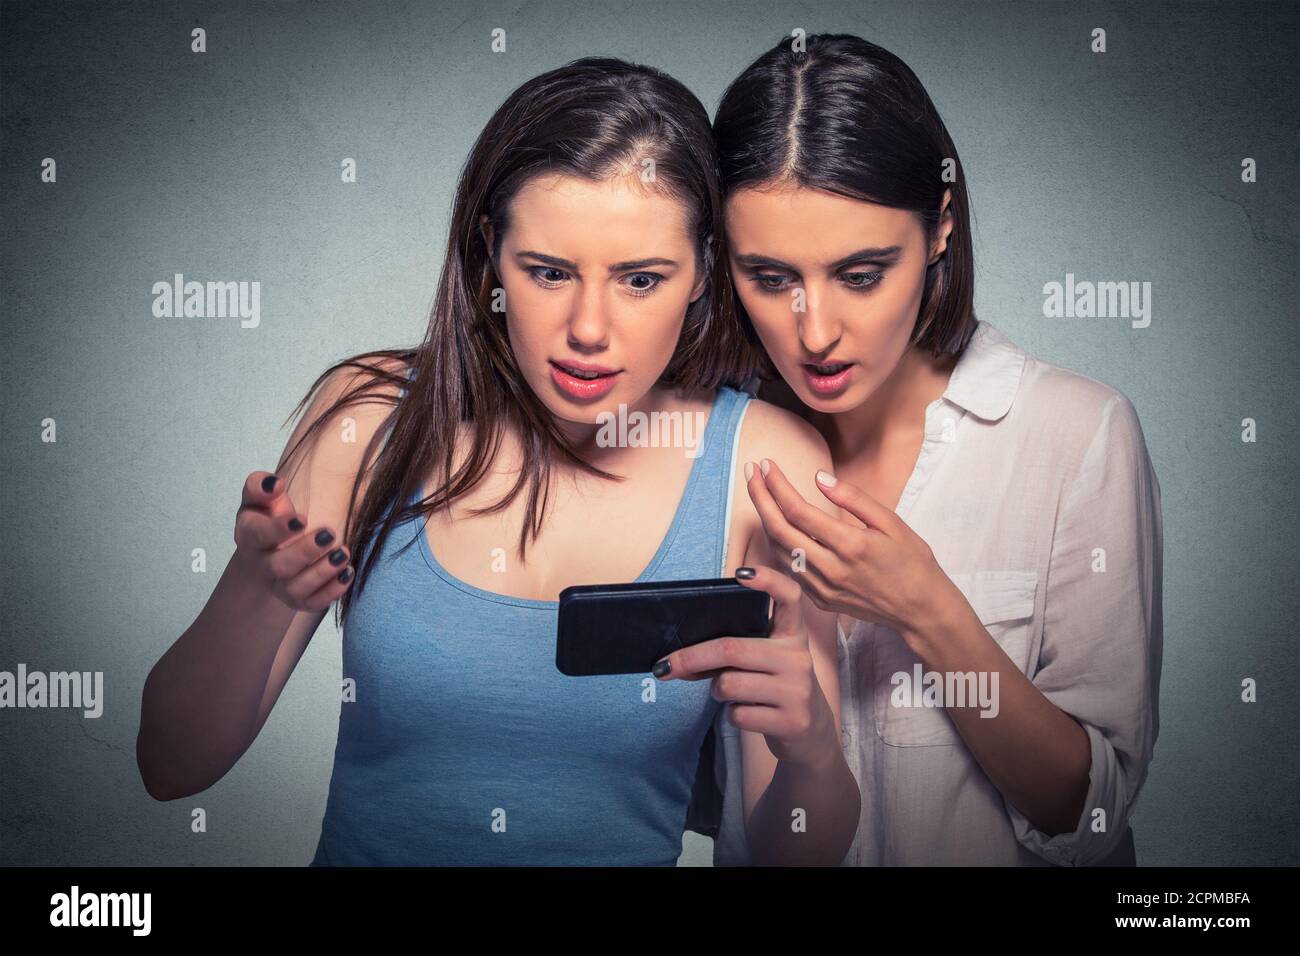 Deux jeunes filles surprises regardant un téléphone portable discutant des dernières nouvelles de potins, se sont bergées de ce qu'elles voient un fond gris isolé Banque D'Images